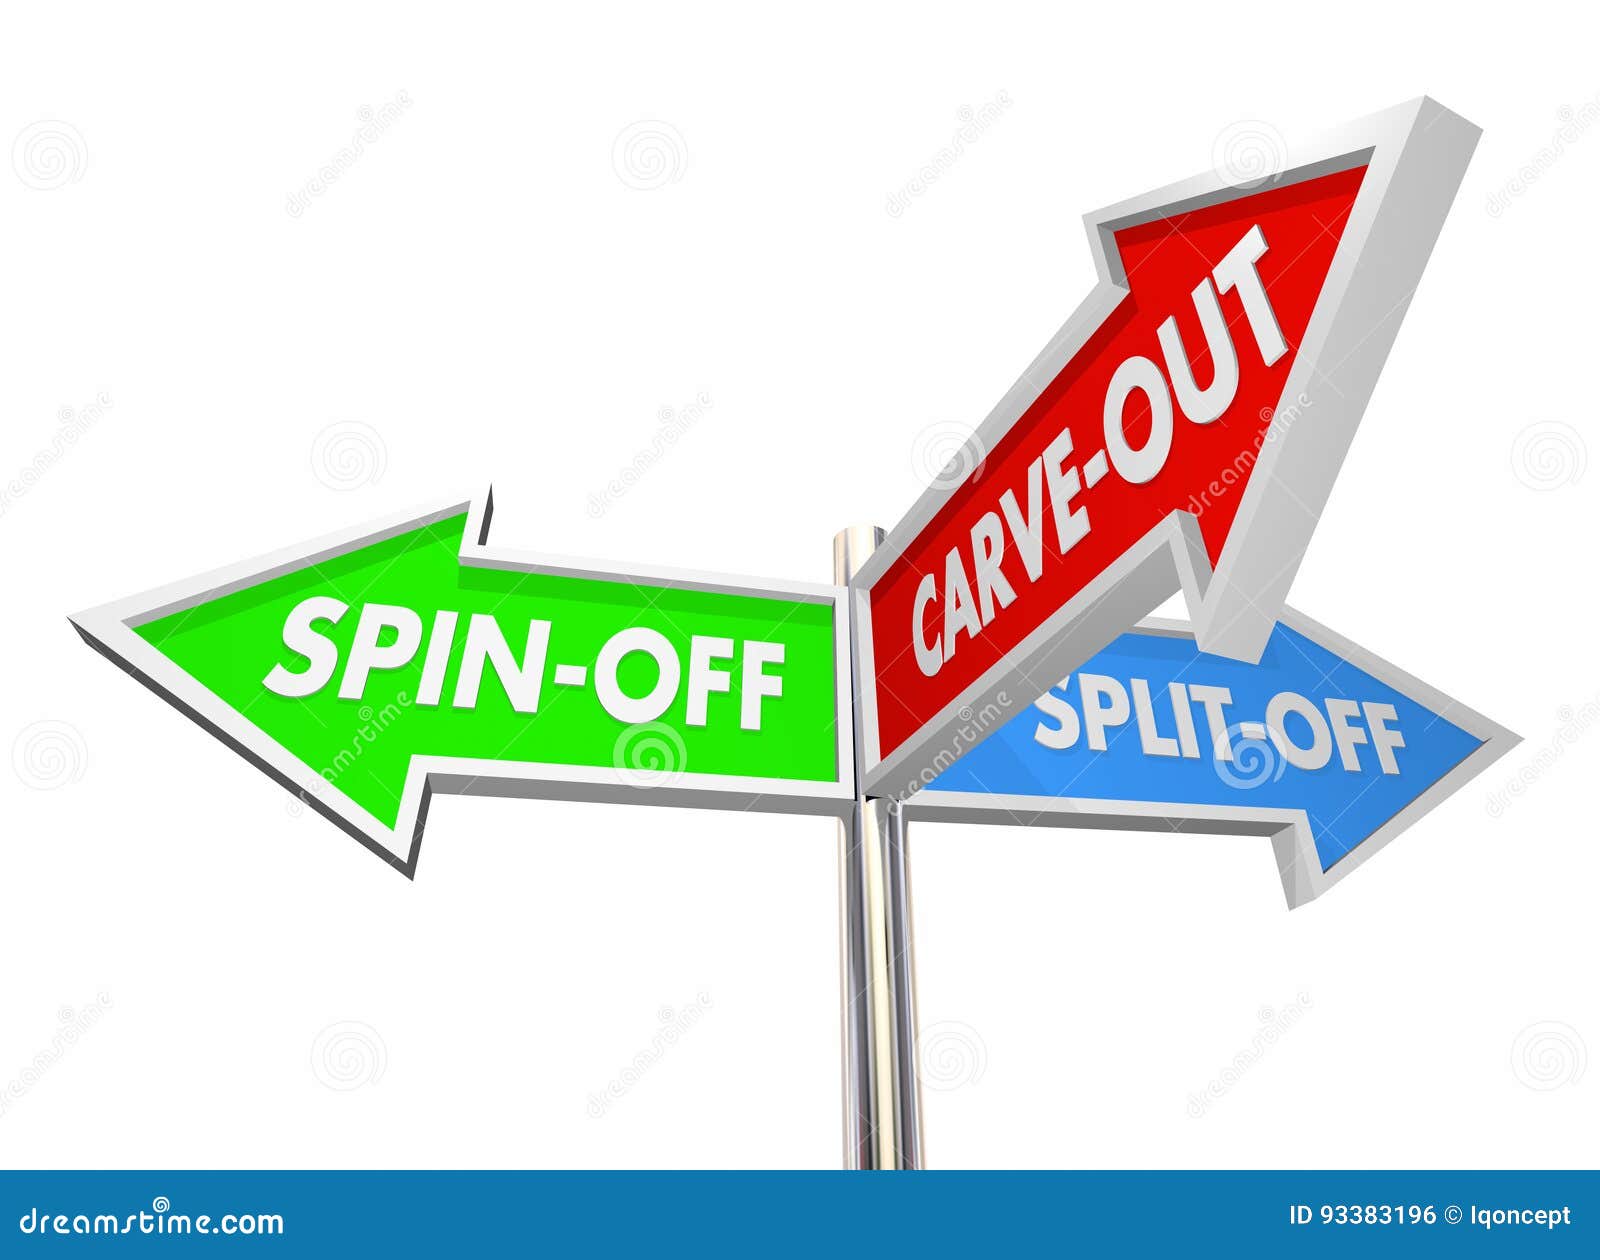 spin-off split-off carve-out divest signs